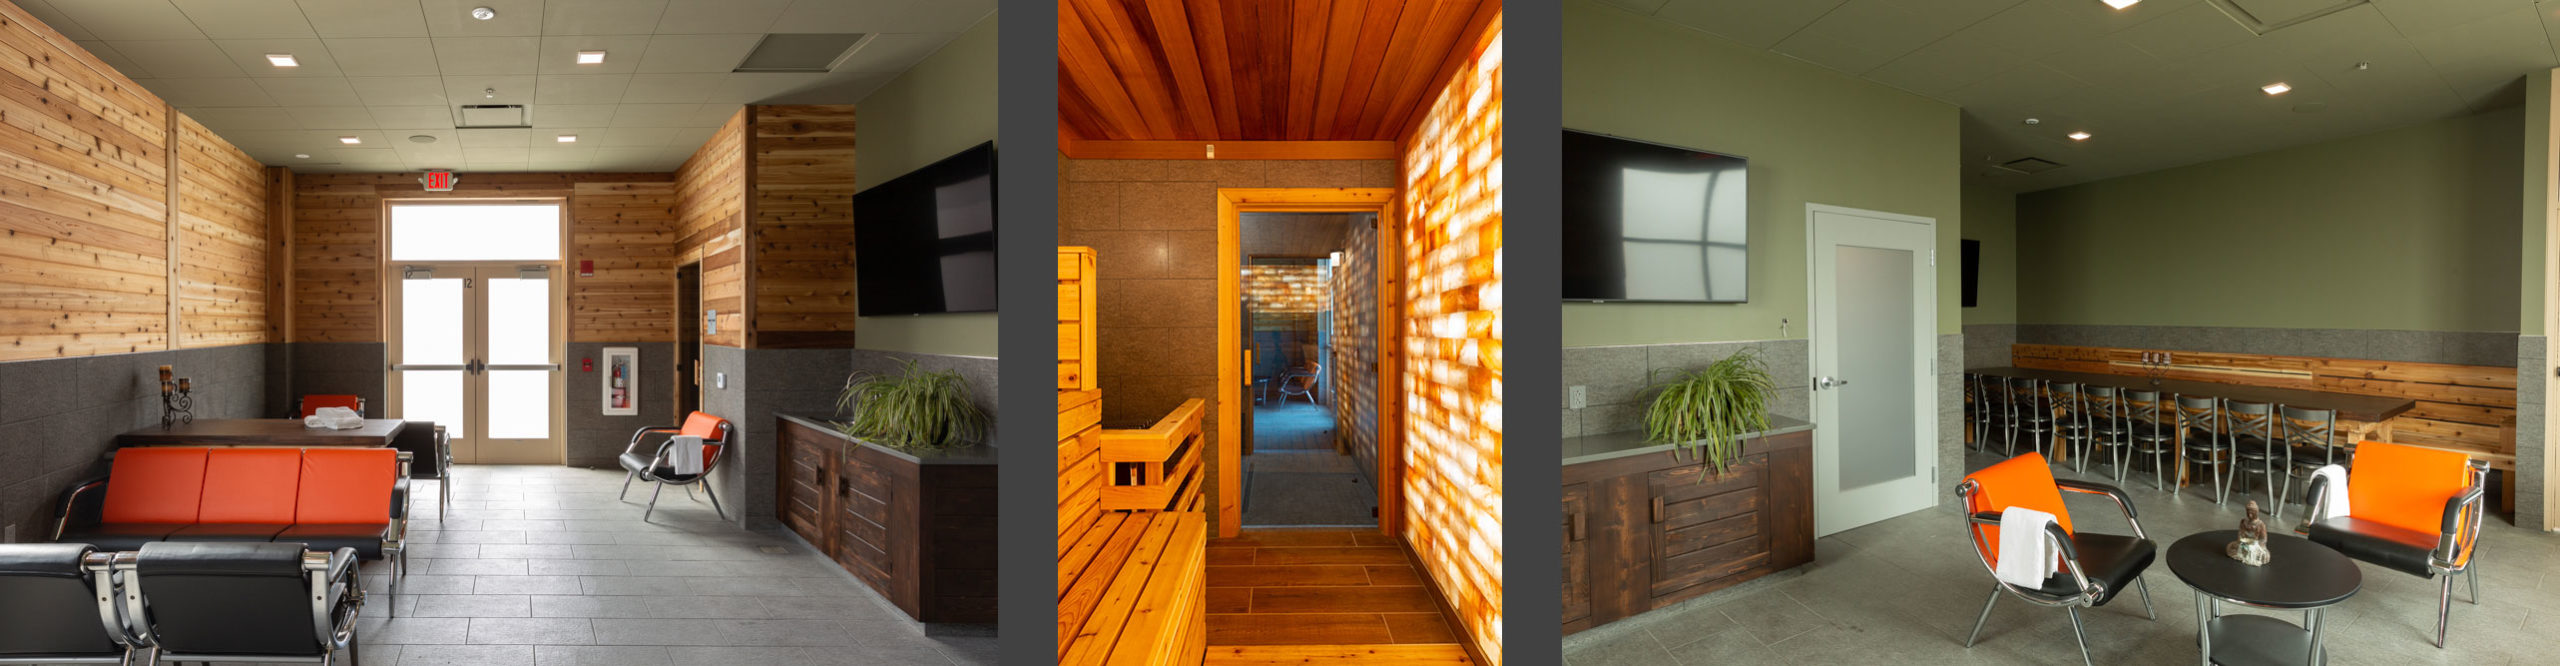 Sky Spa Sauna - Private Suite A